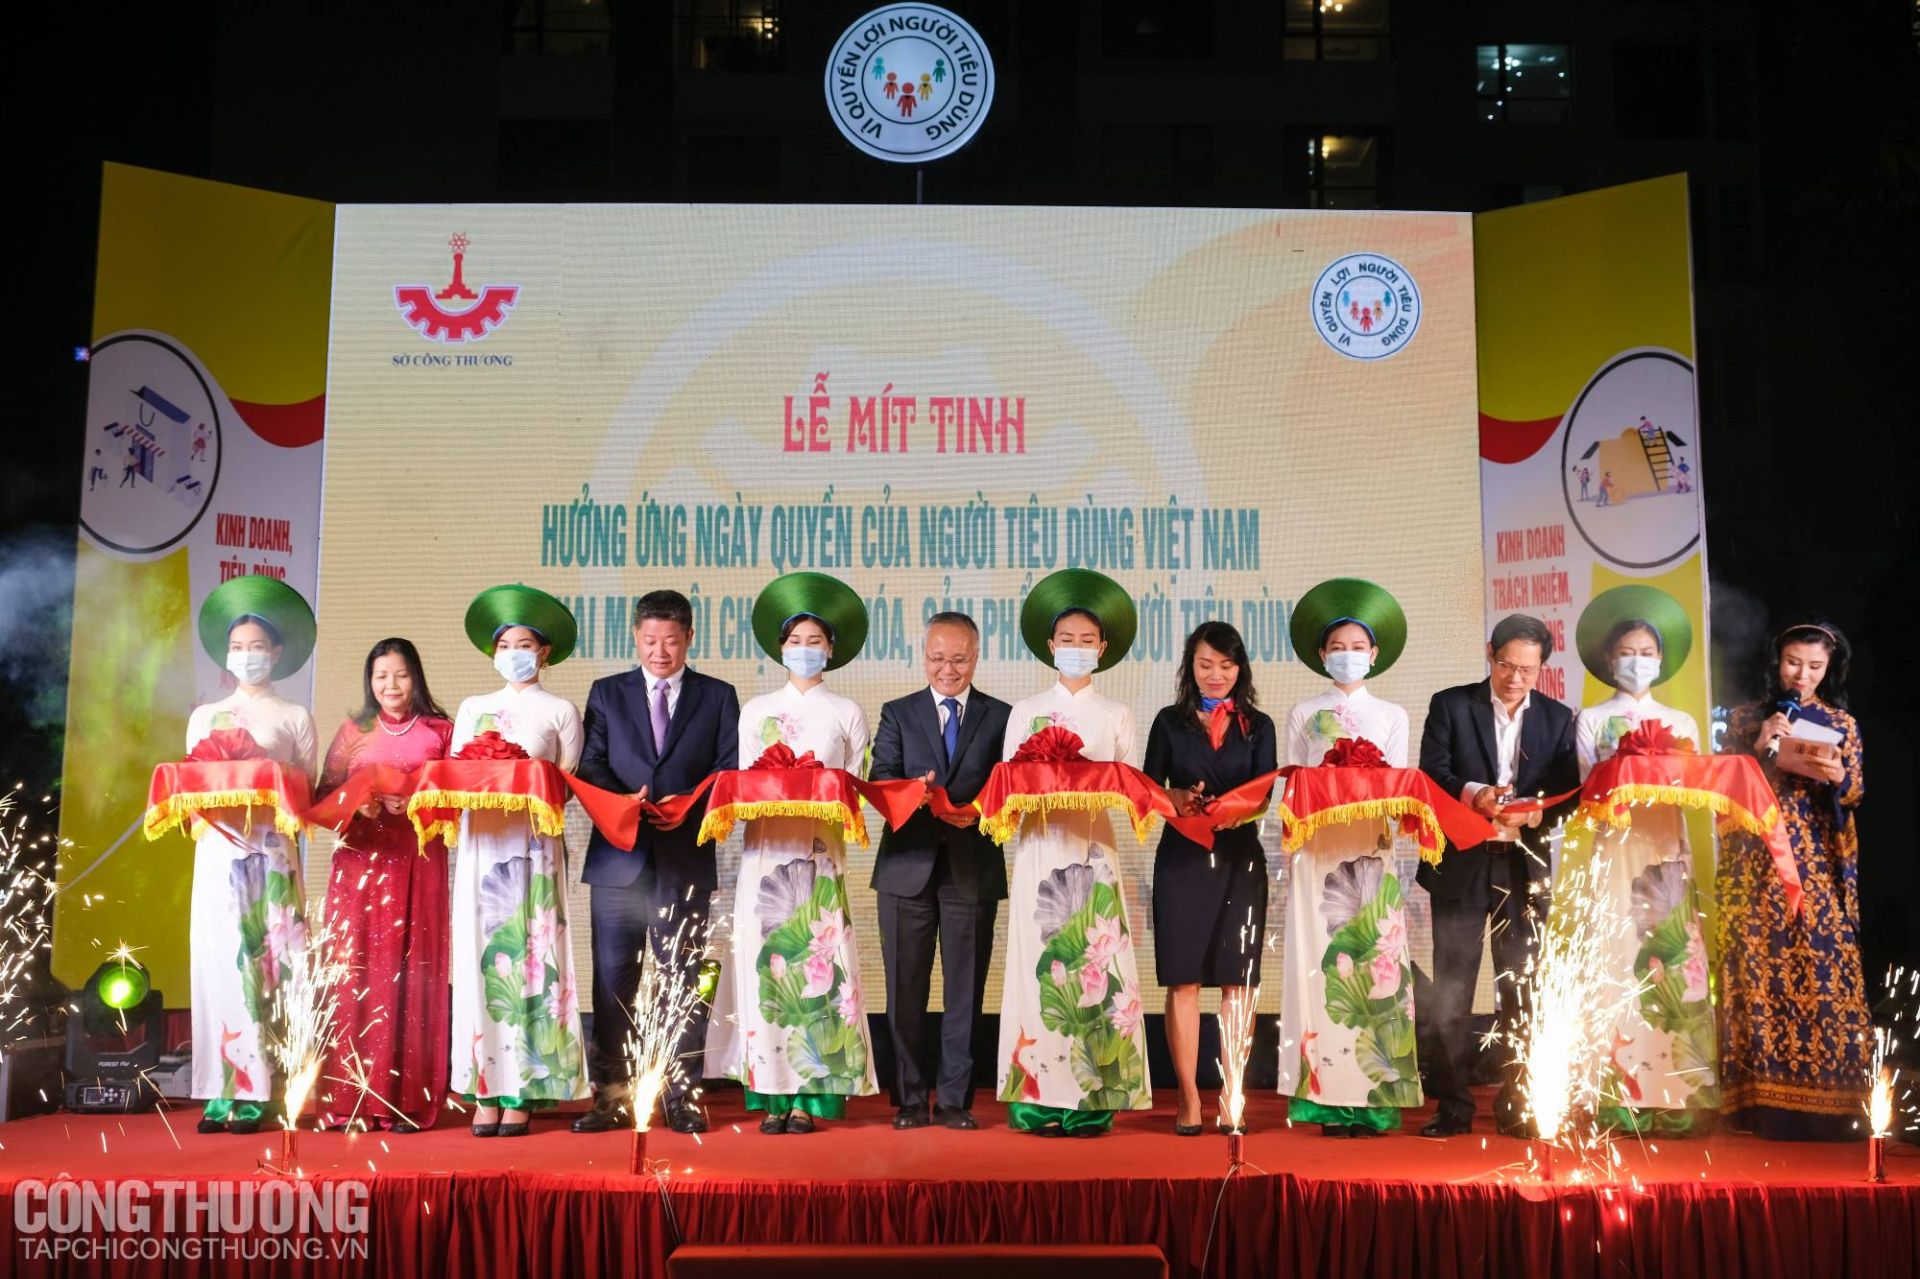 Lễ Mít tinh Hưởng ứng Ngày Quyền của người tiêu dùng Việt Nam và Khai mạc Hội chợ hàng hóa, sản phẩm vì người tiêu dùng Thành phố Hà Nội tháng 3/2021